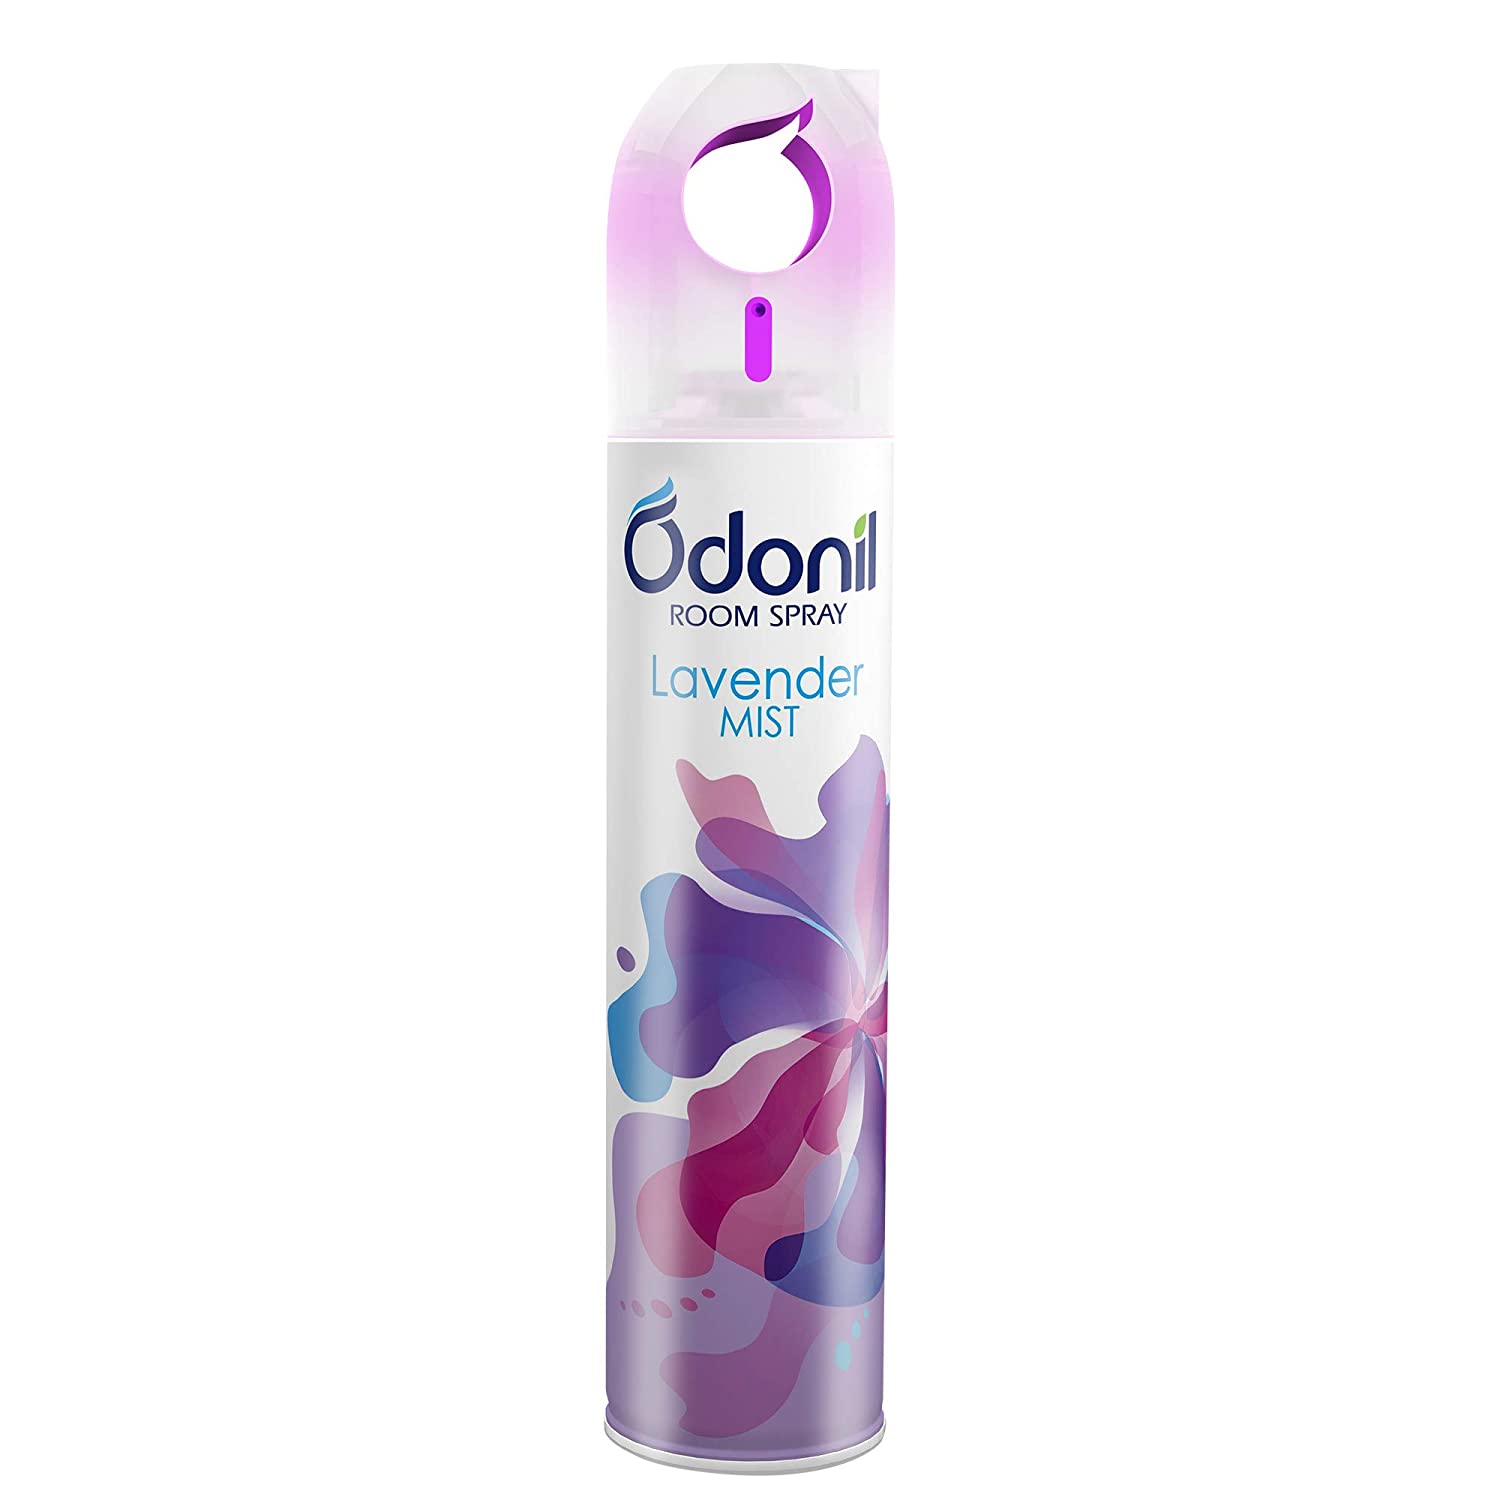 odonil-room-spray-air-freshener